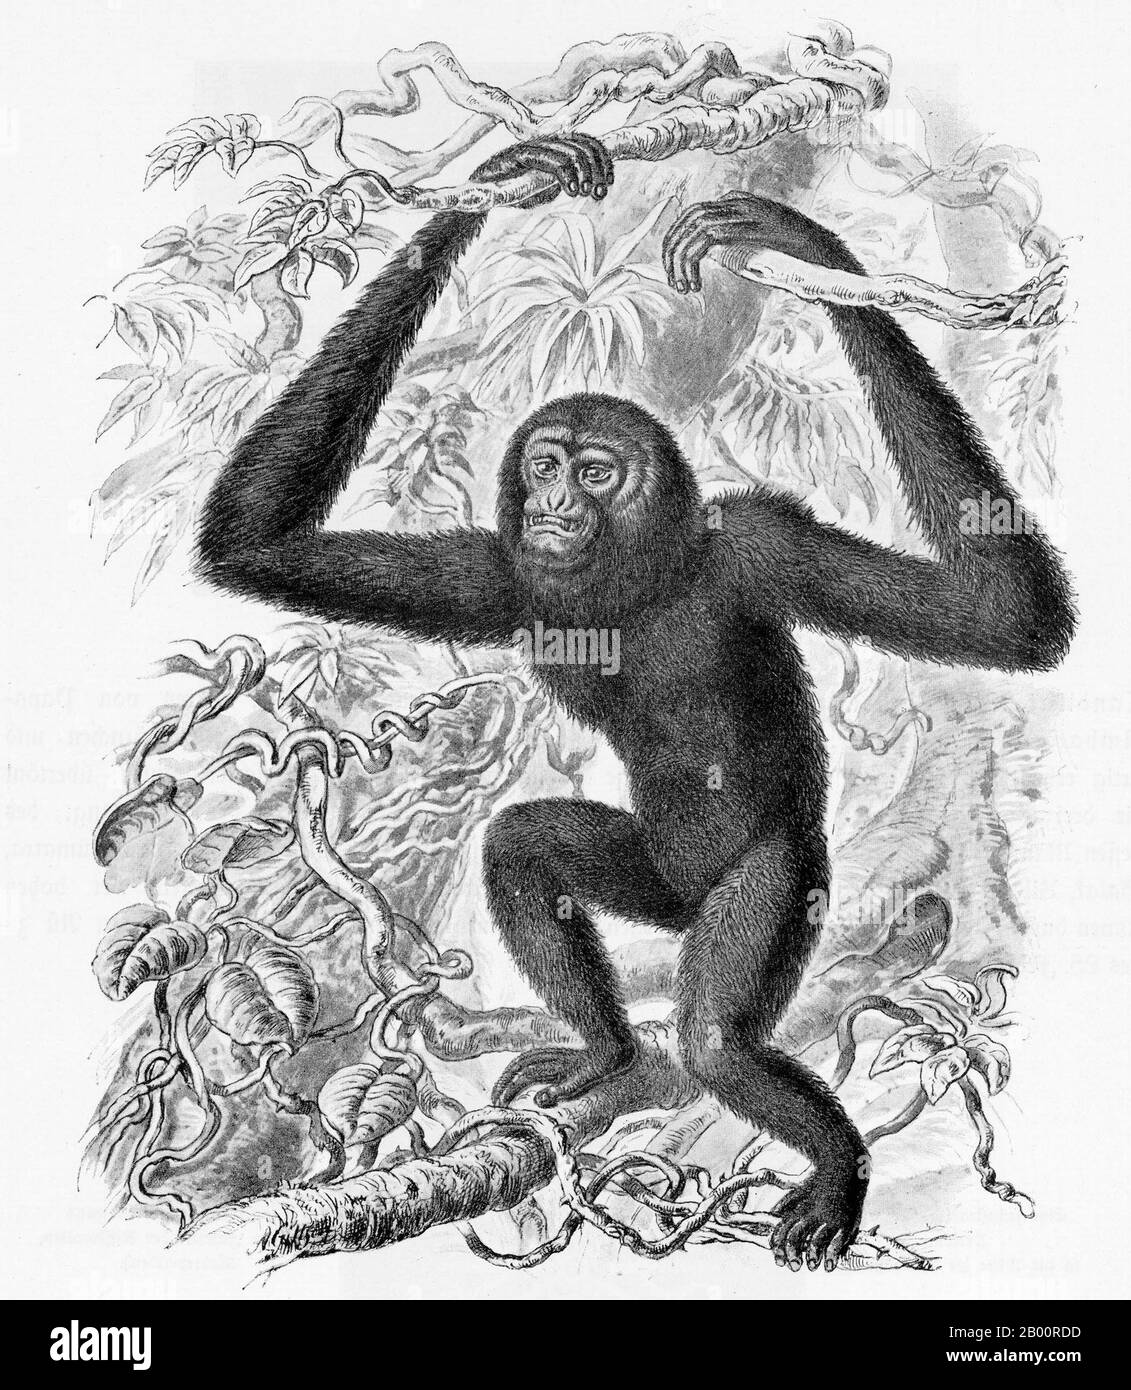 Indonesien/Deutschland: Ein Siamang oder ein schwarz gefurrter Gibbon, Sumatra. Stich von Ernst Haeckel (1834-1919) der Siamang (Symphalangus syndactylus) ist ein schwanzloser, arborealer, schwarz furnierter Gibbon, der in den Wäldern Malaysias, Thailands und Sumatras beheimatet ist. Der Siamang, der größte der kleineren Affen, kann doppelt so groß sein wie andere Gibbons, erreicht 1 m in der Höhe und wiegt bis zu 14 kg. Stockfoto